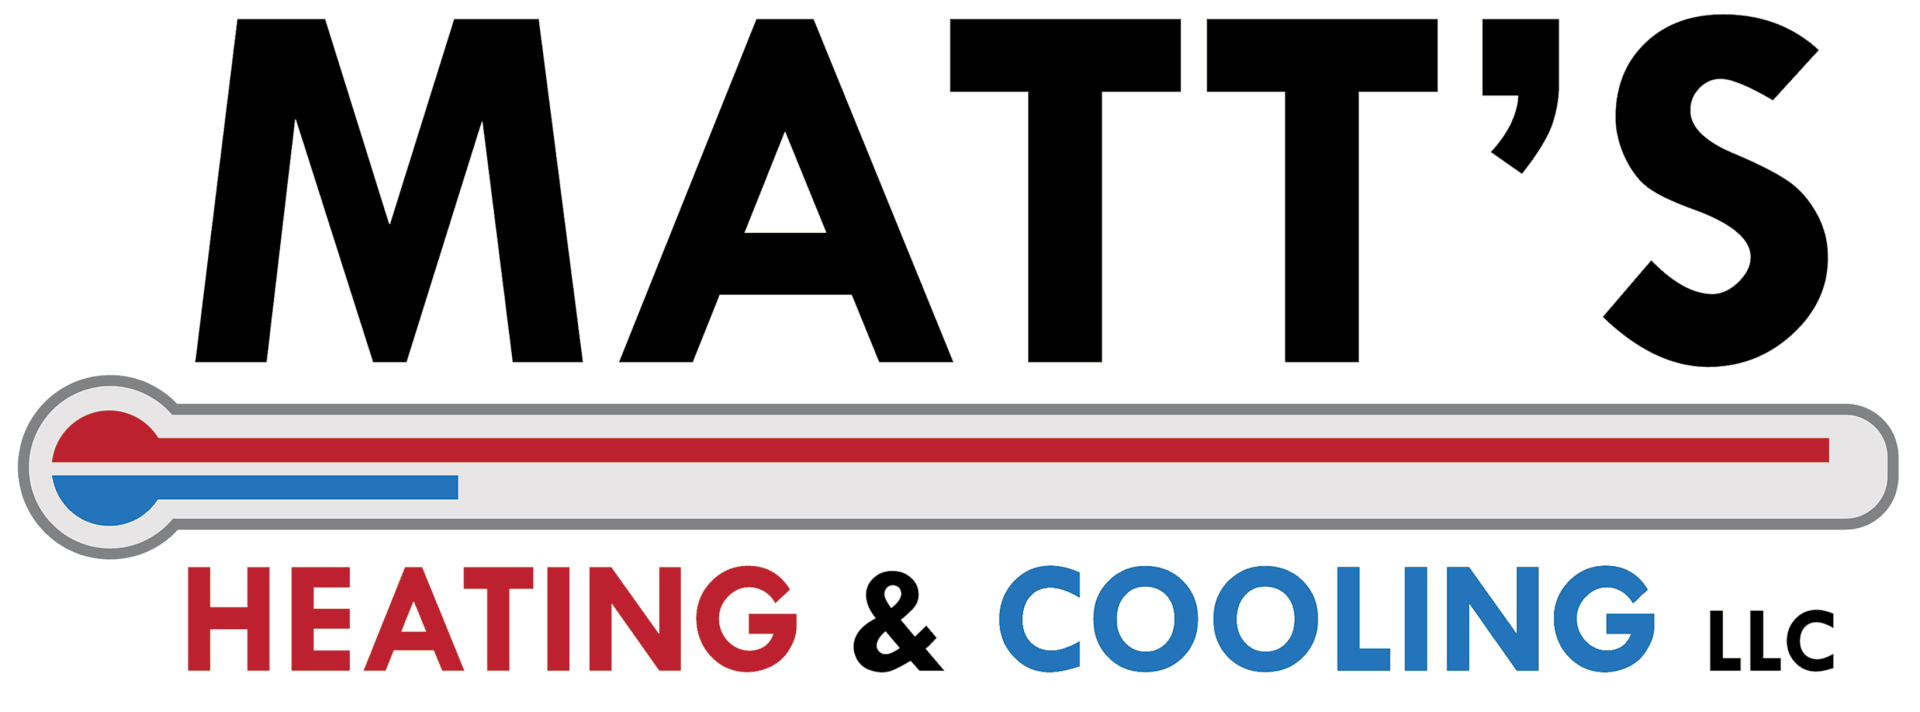 Matt’s Heating & Cooling LLC